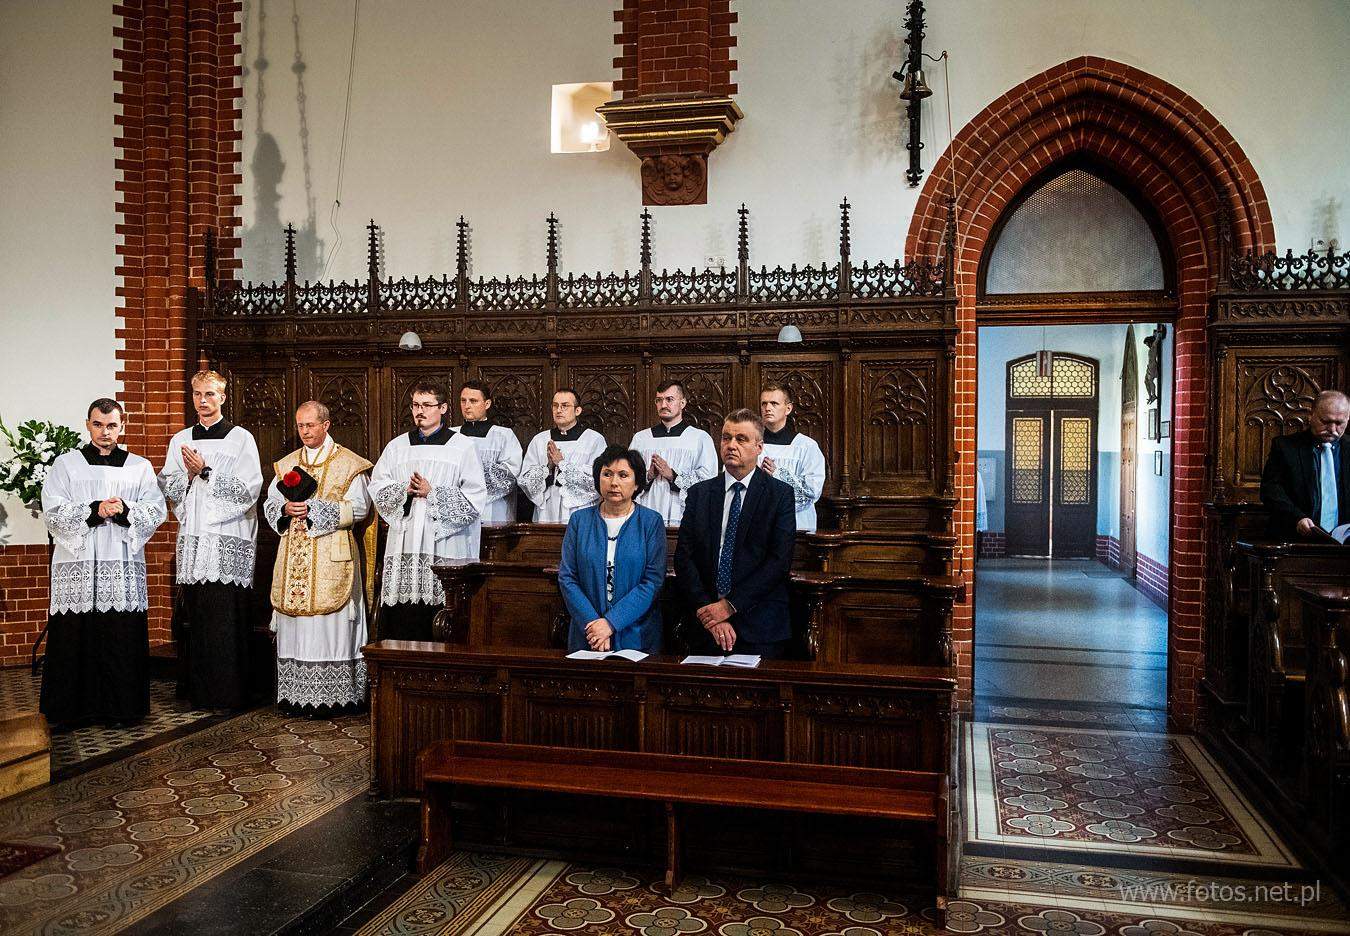 Wrocław - ślub w rycie trydenckim